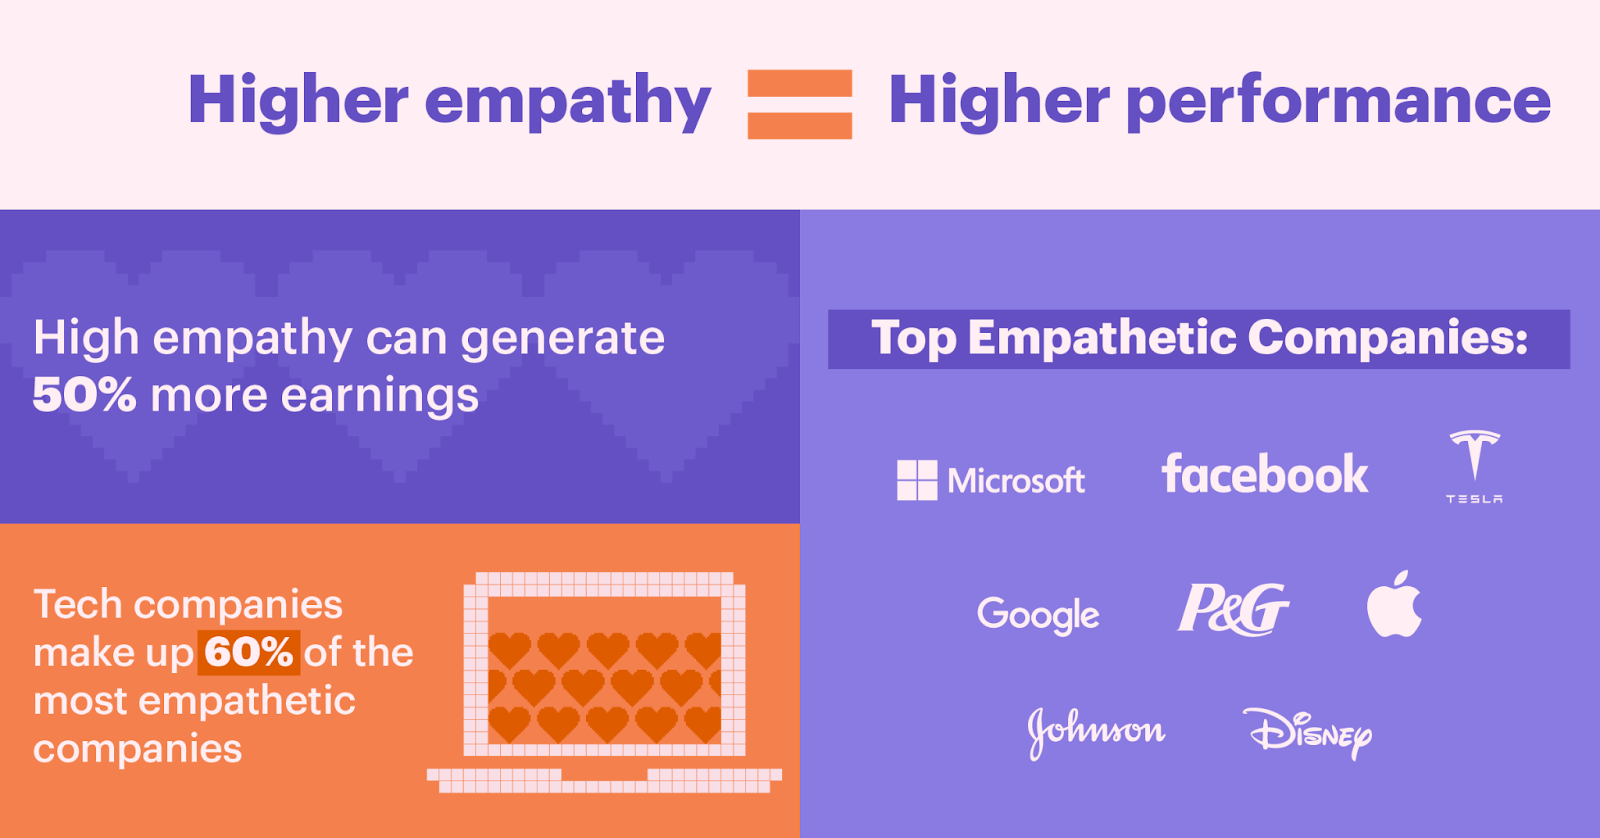 Mayor empatía equivale a mayor rendimiento